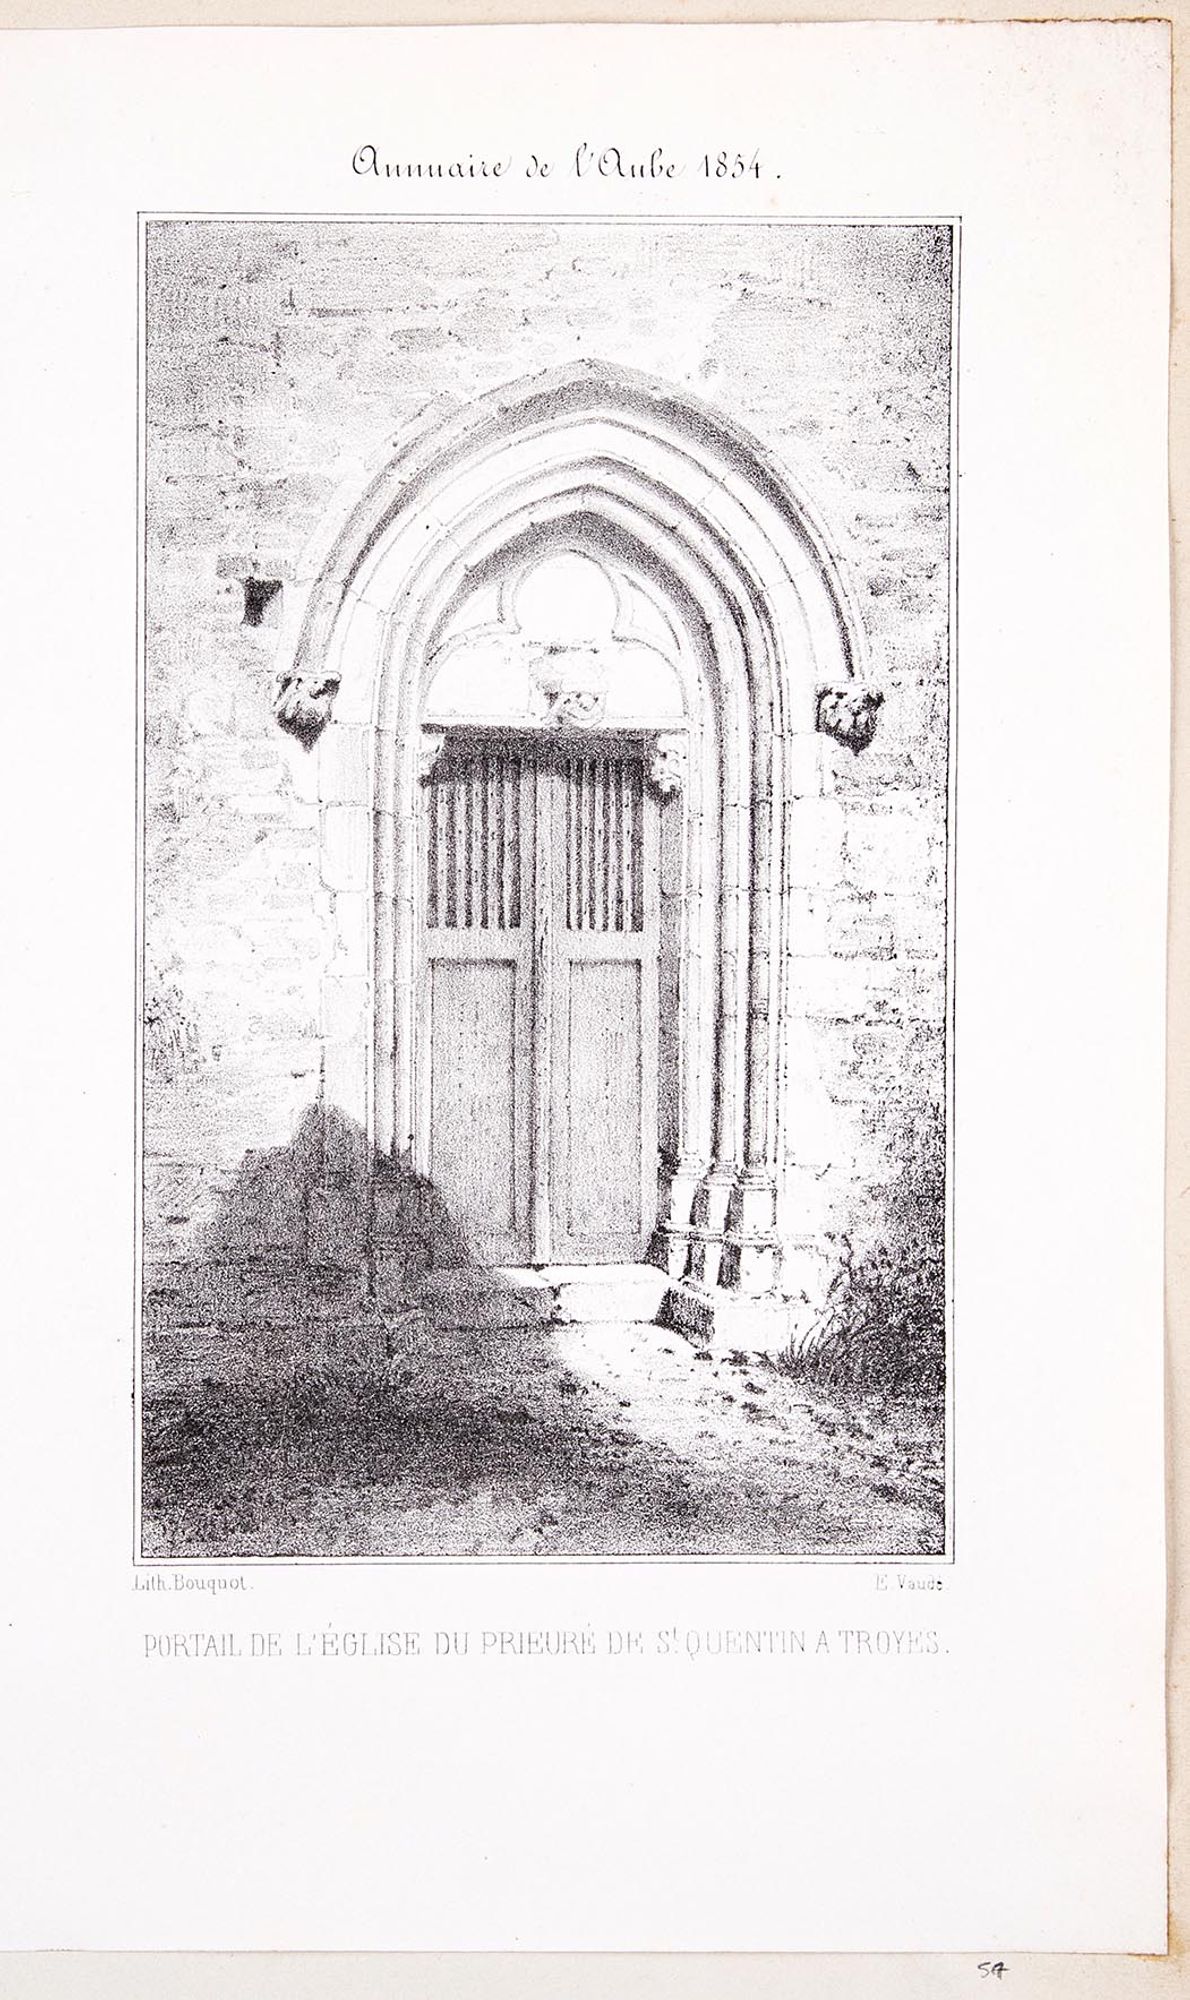 Lithographie. Portail de l'église du prieuré de Saint-Quentin à Troyes. Extrait de l'Annuaire de l'Aube, Troyes, 1854.